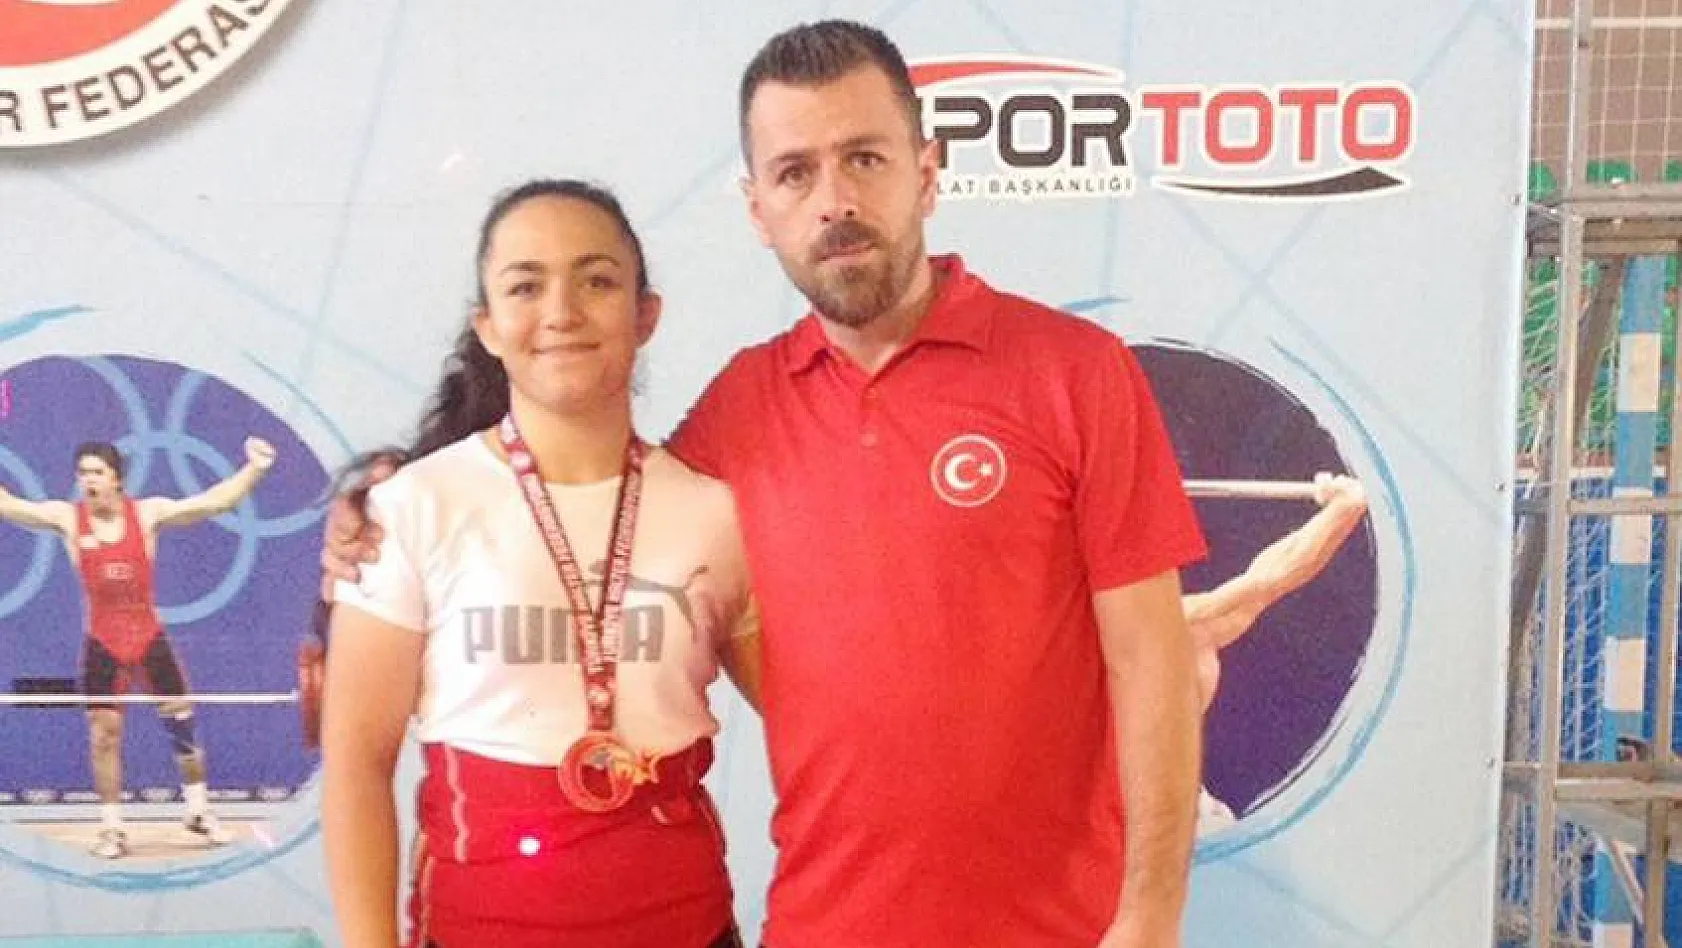 Yıldızlar Ferdi Türkiye Halter Şampiyonasından 1 gümüş, 1 bronz madalya